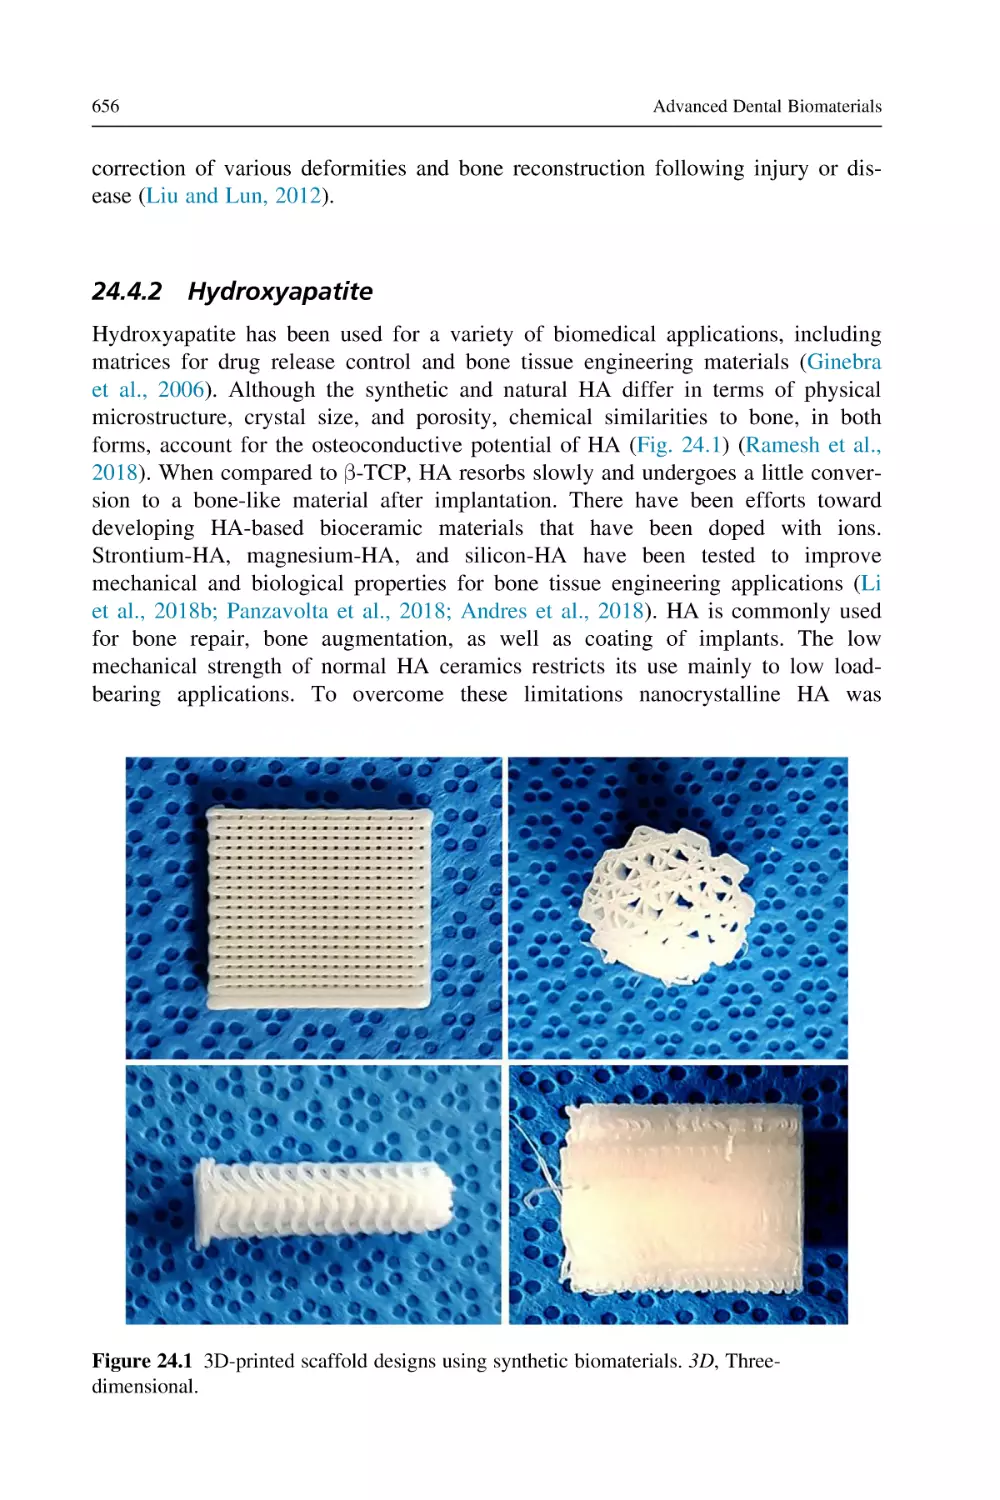 24.4.2 Hydroxyapatite